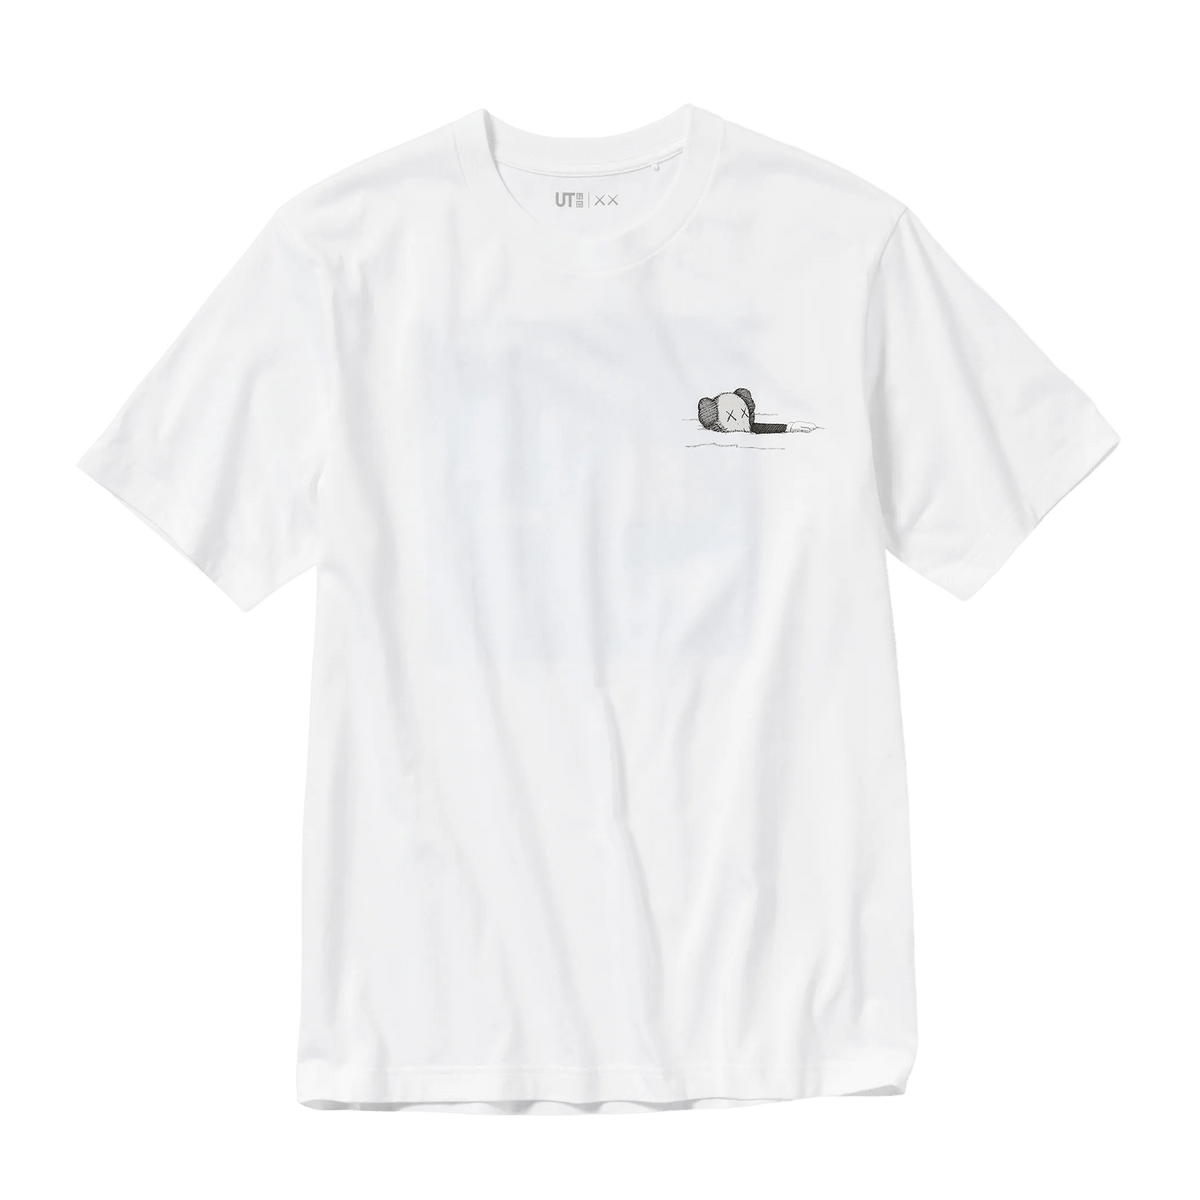 KAWS x UNIQLO UT Graphic T-Shirt Kids 'White' - CerbeShops